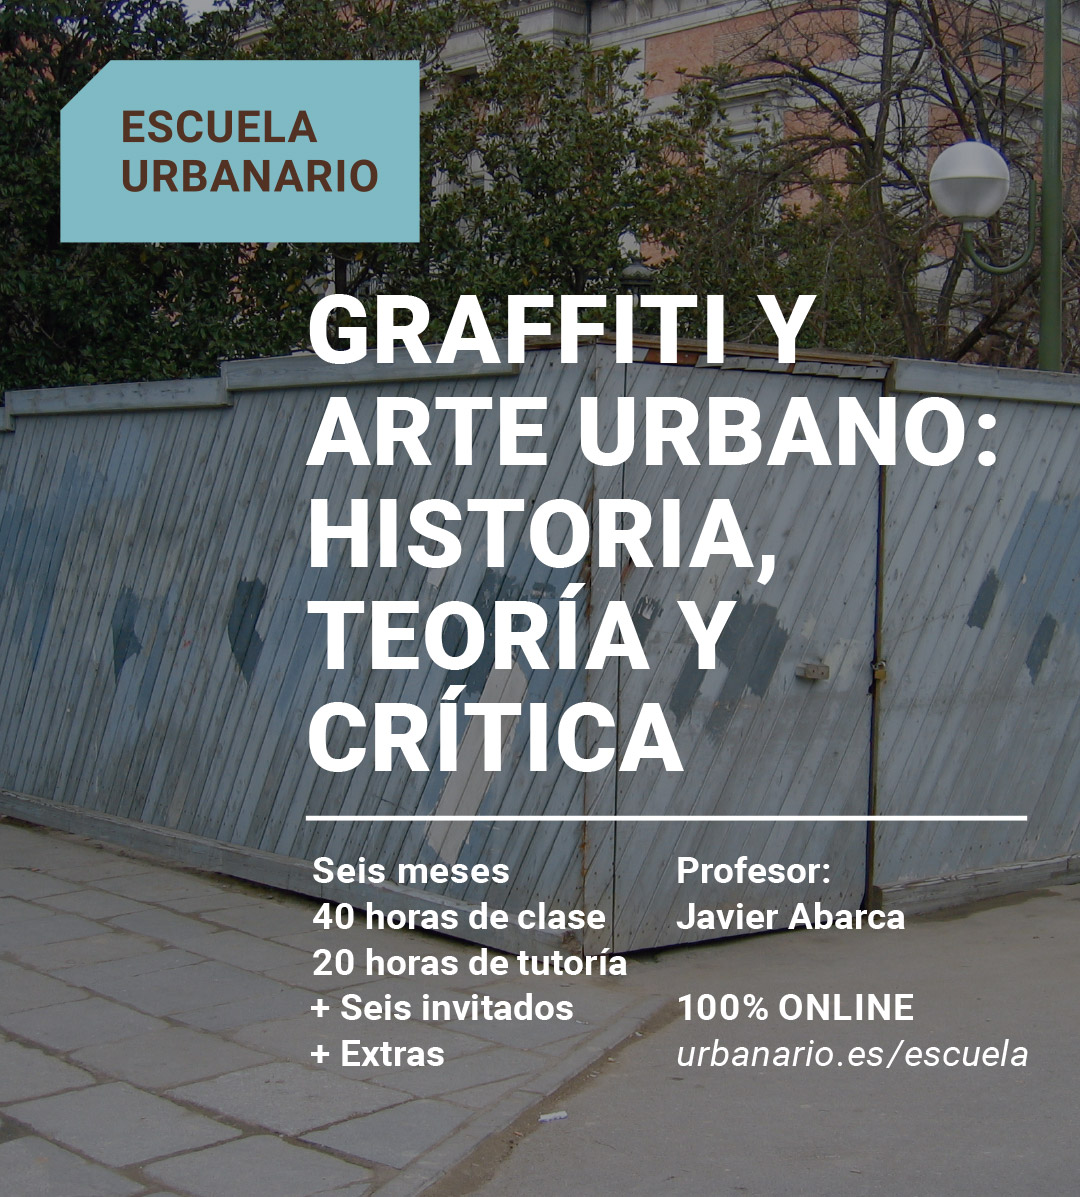 Graffiti y arte urbano: historia, teoría y crítica. Javier Abarca. Escuela Urbanario